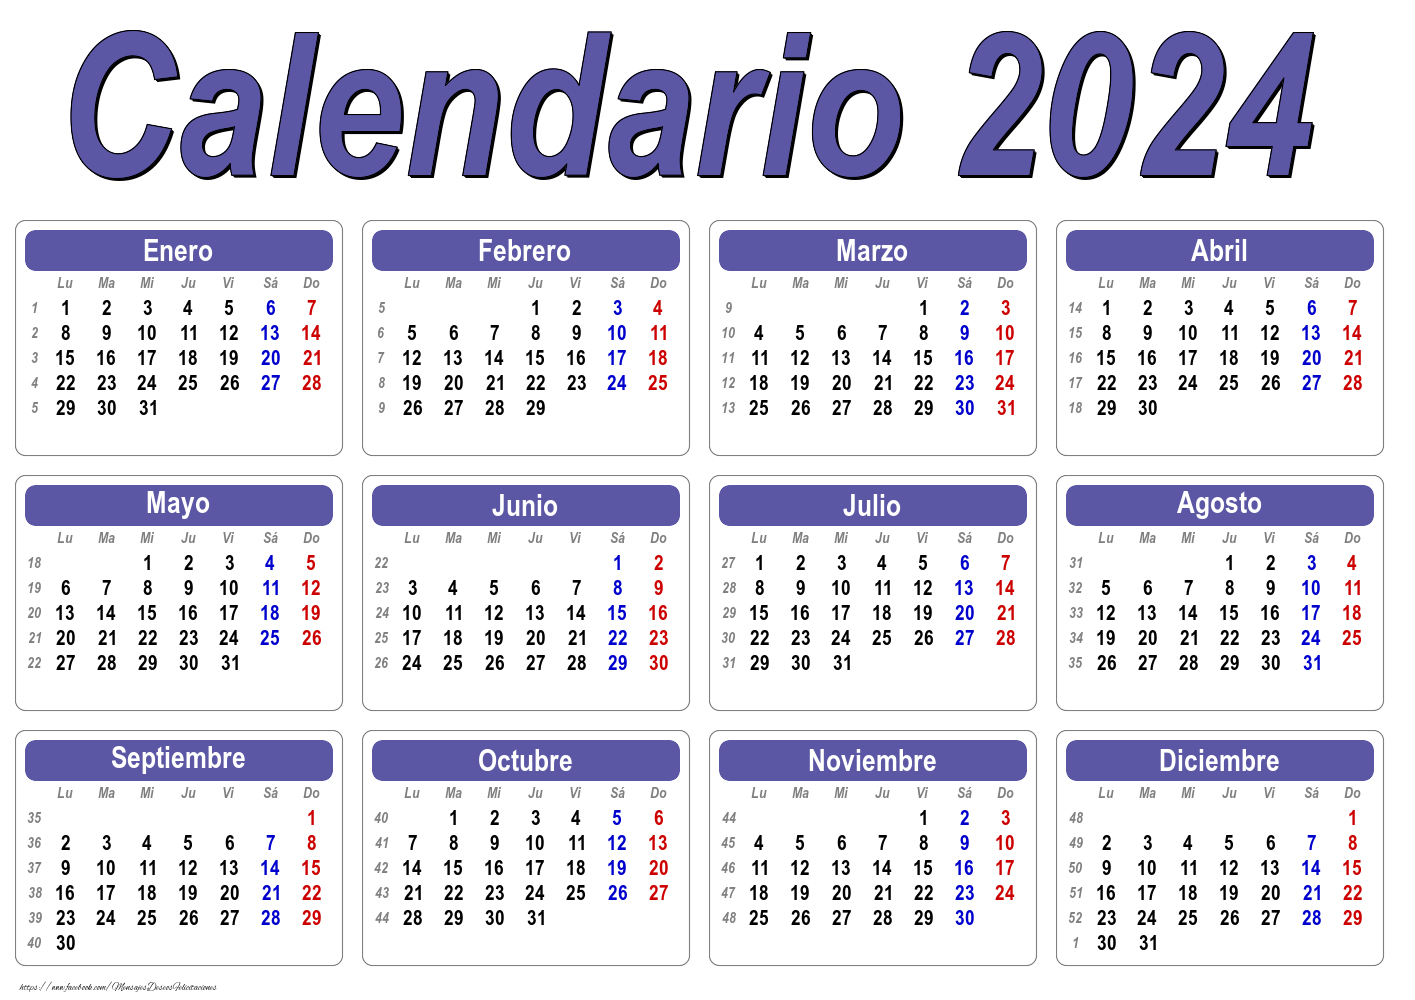 Calendario 2024 - Clásico - Modelo 001